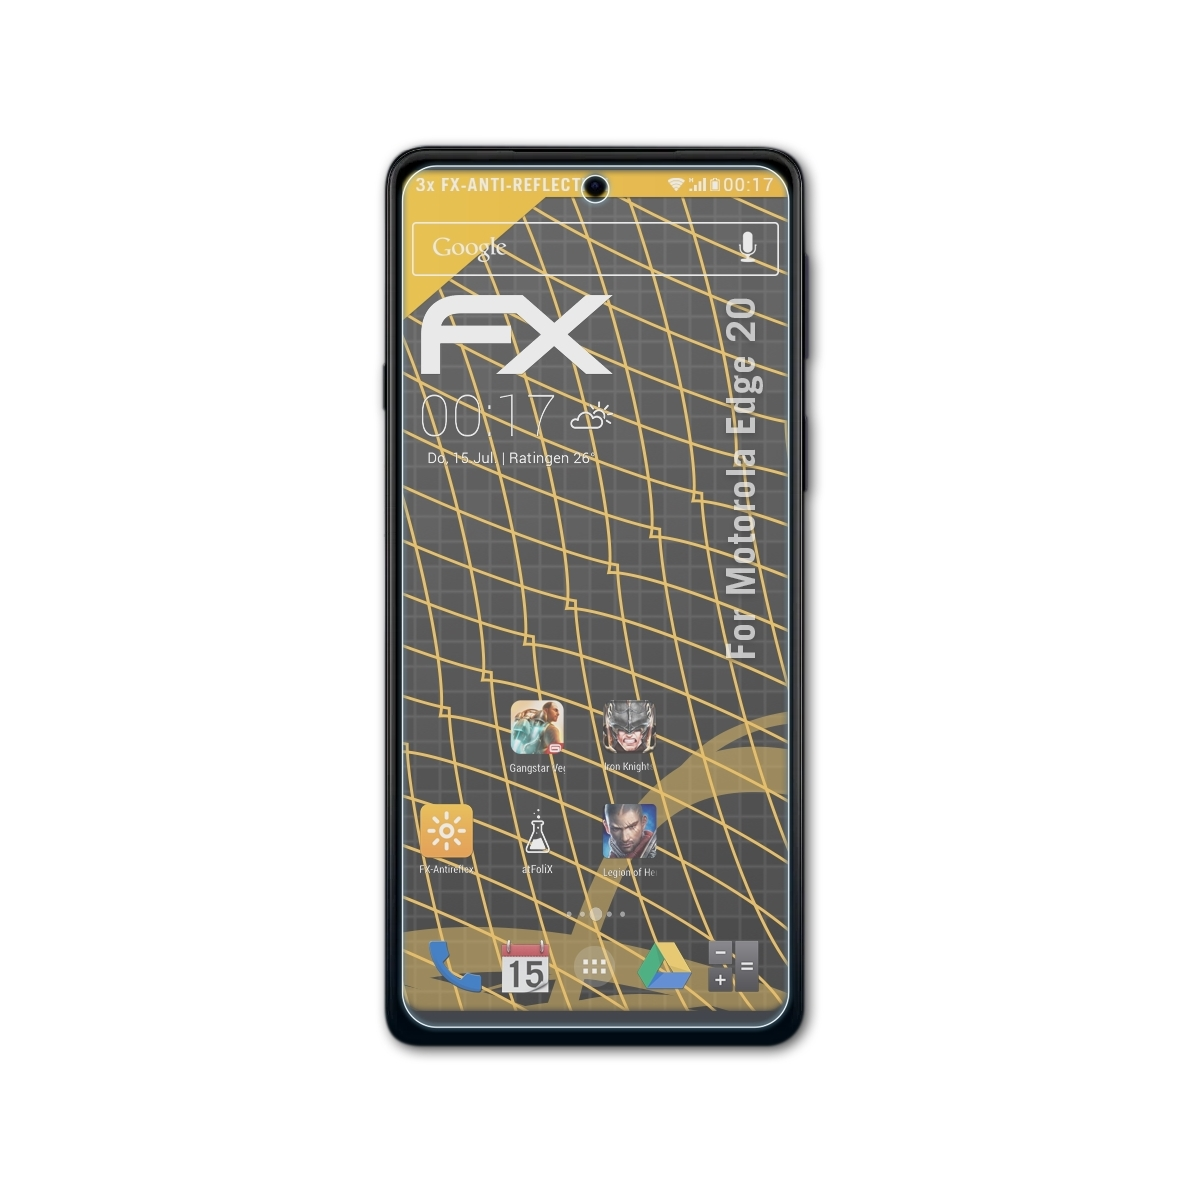 FX-Antireflex 3x 20) Motorola ATFOLIX Edge Displayschutz(für